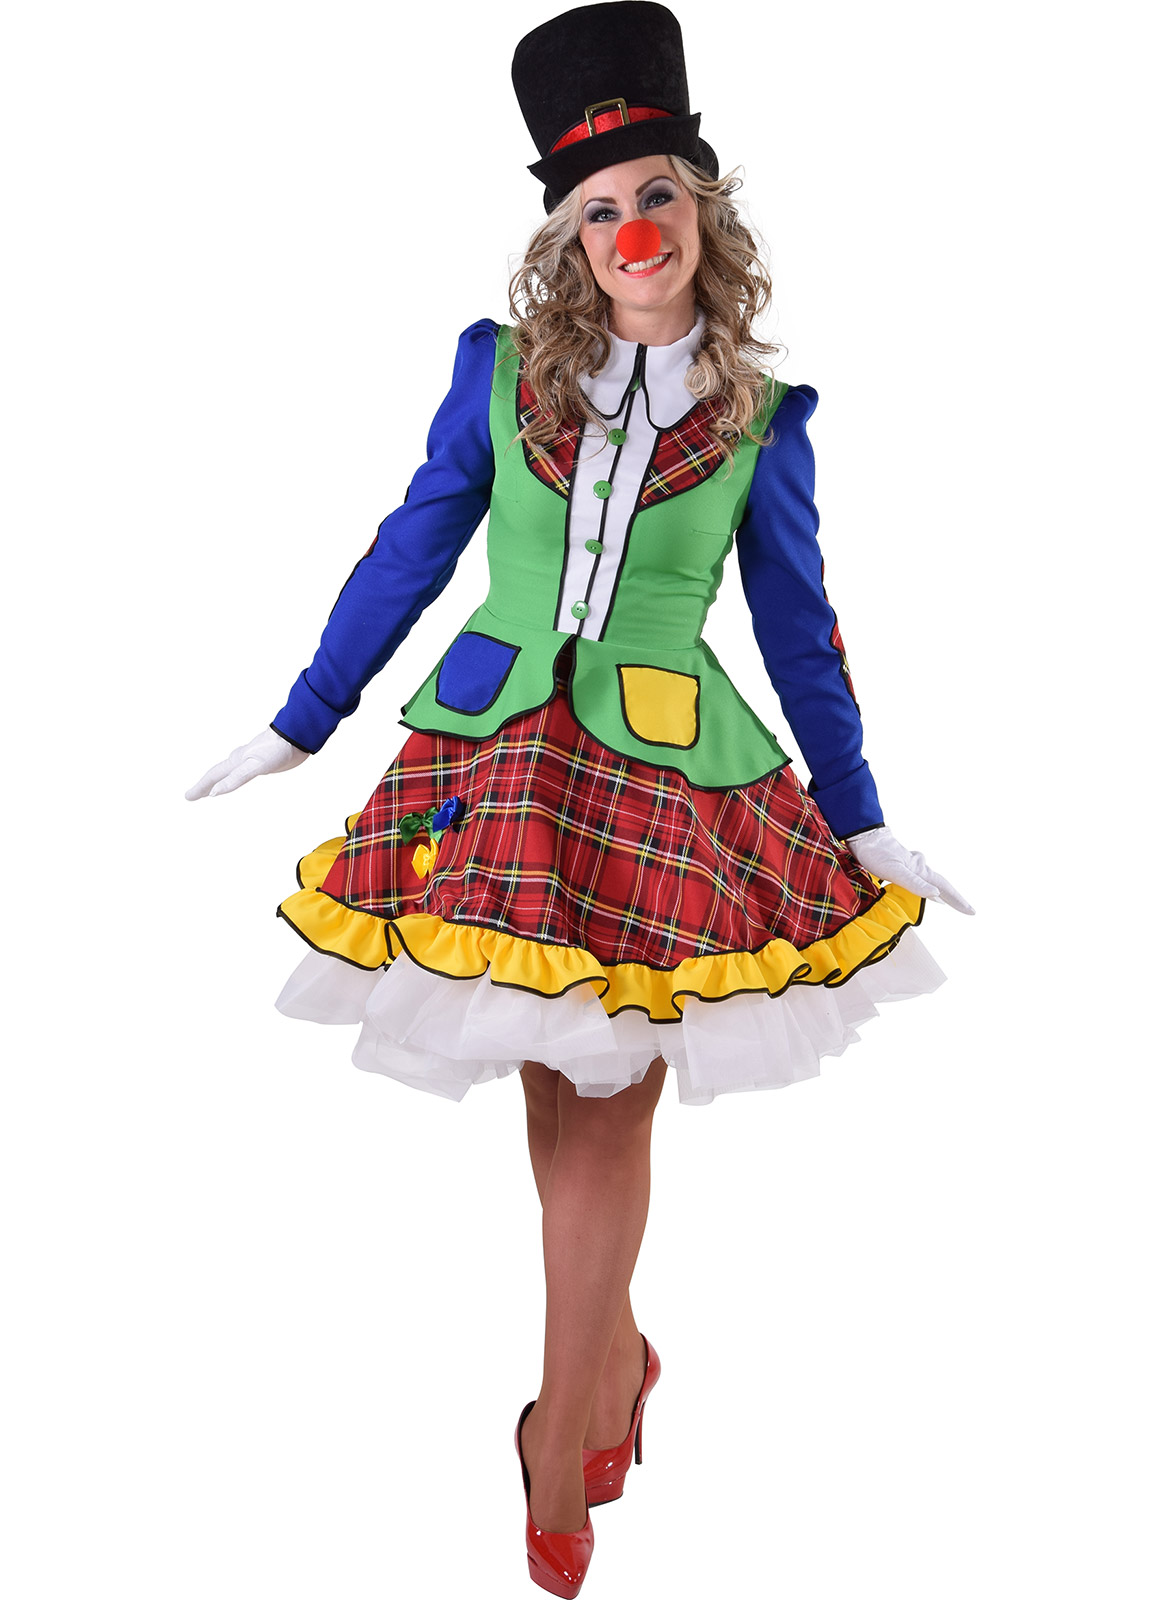 Mevrouw Clown Pipo - Willaert, verkleedkledij, carnavalkledij, carnavaloutfit, feestkledij, circus, clown